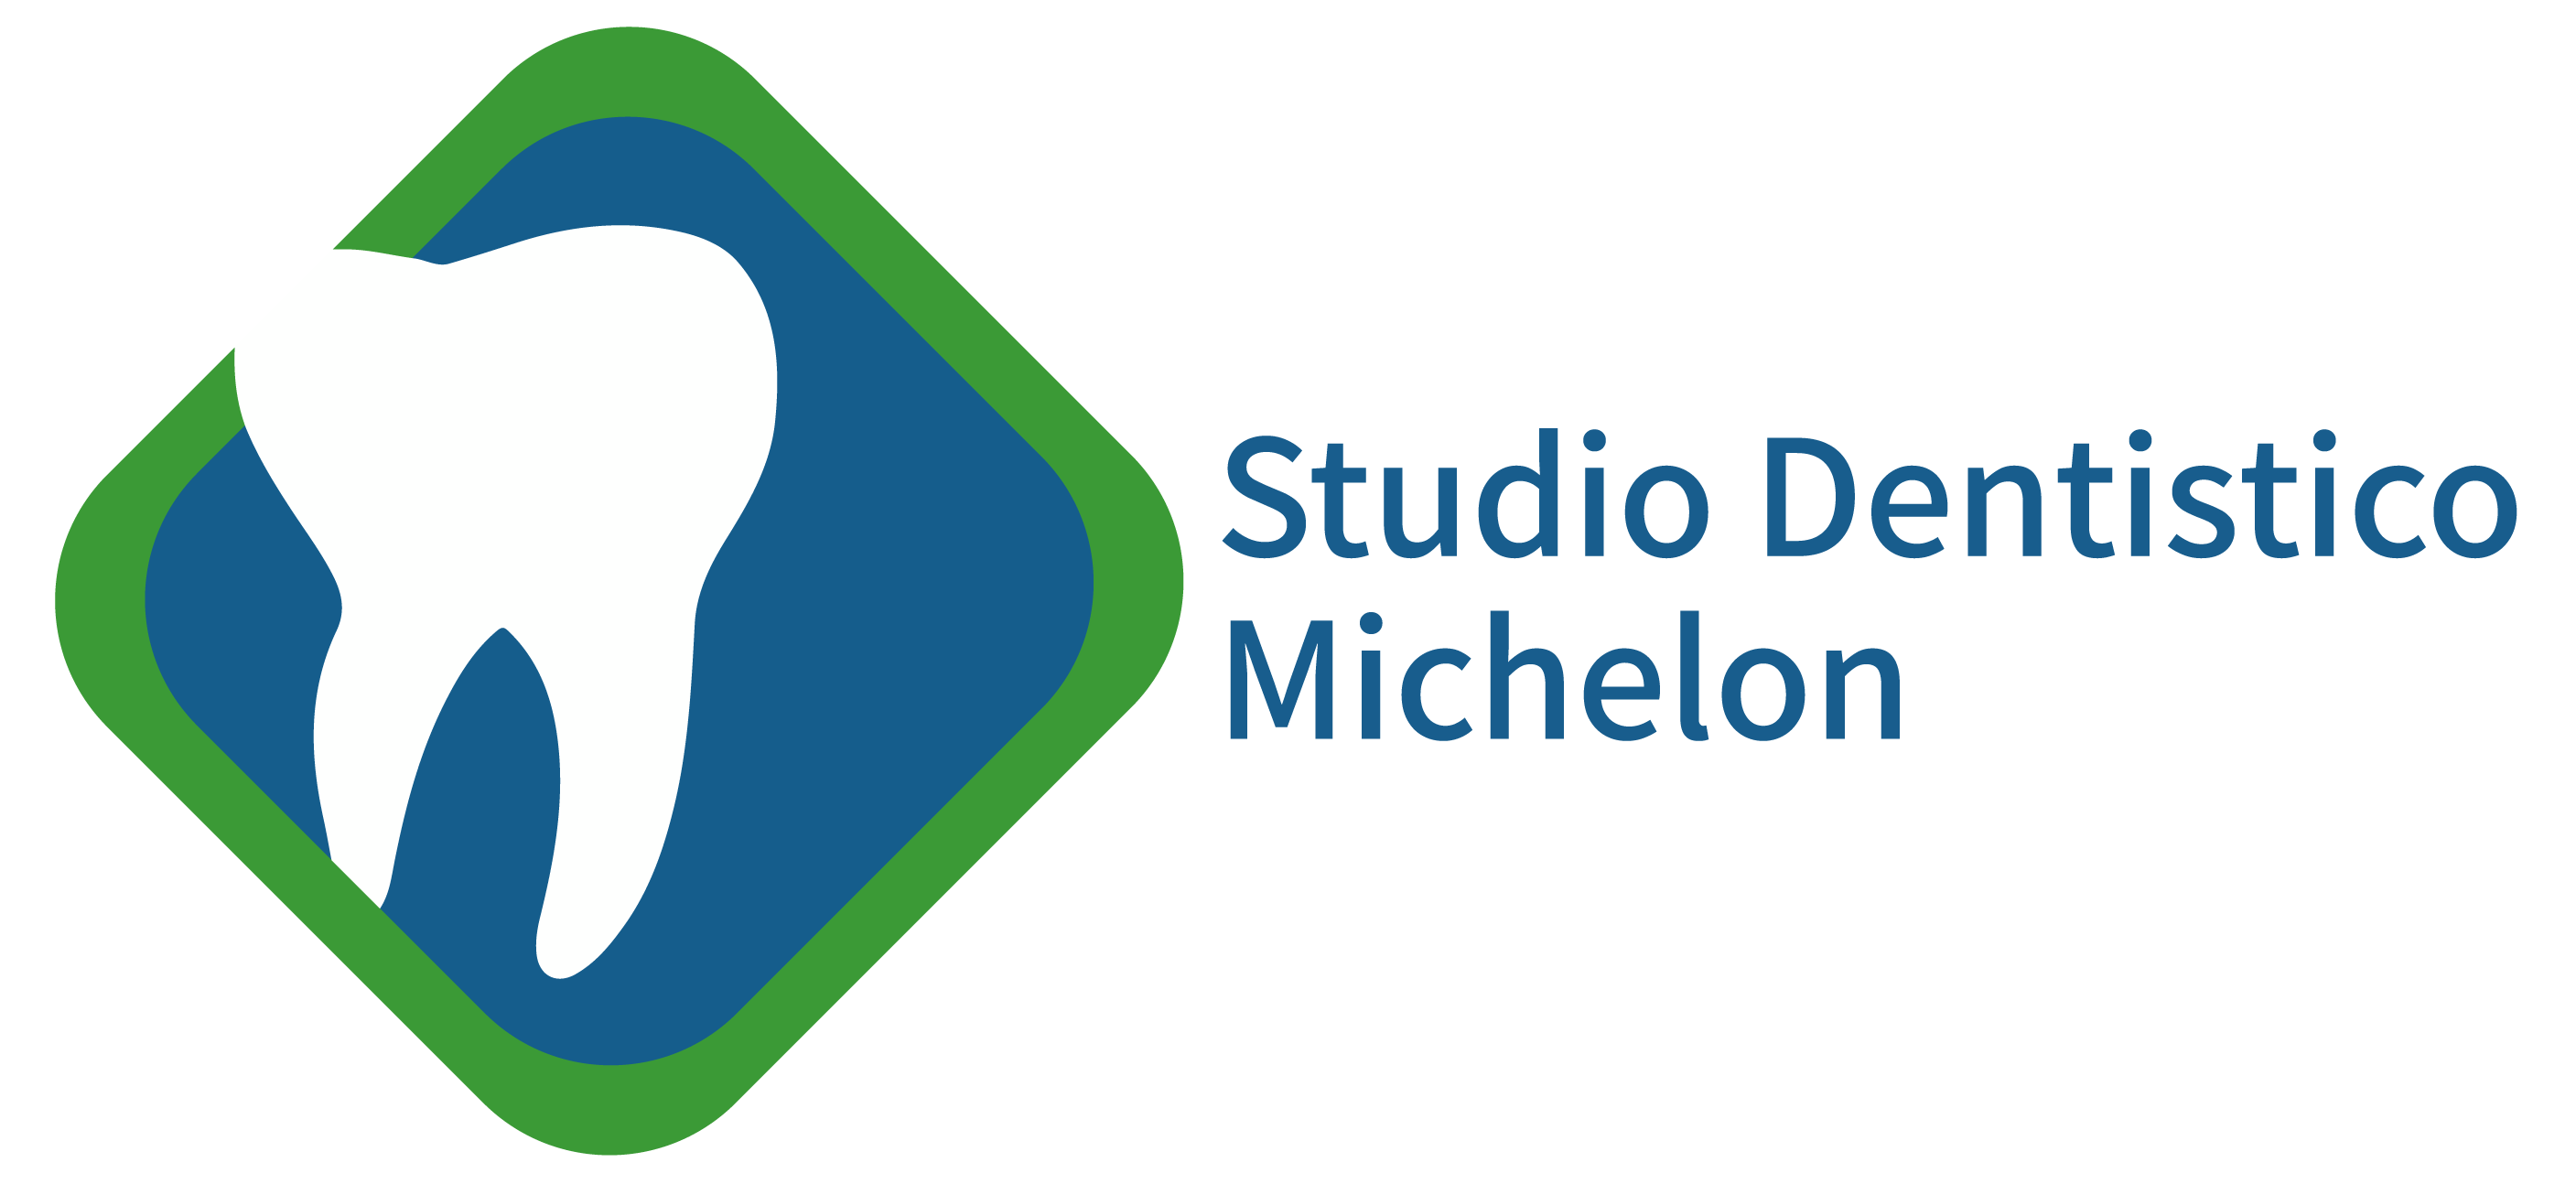 Studio Dentistico Michelon | Studio dentistico Vicenza